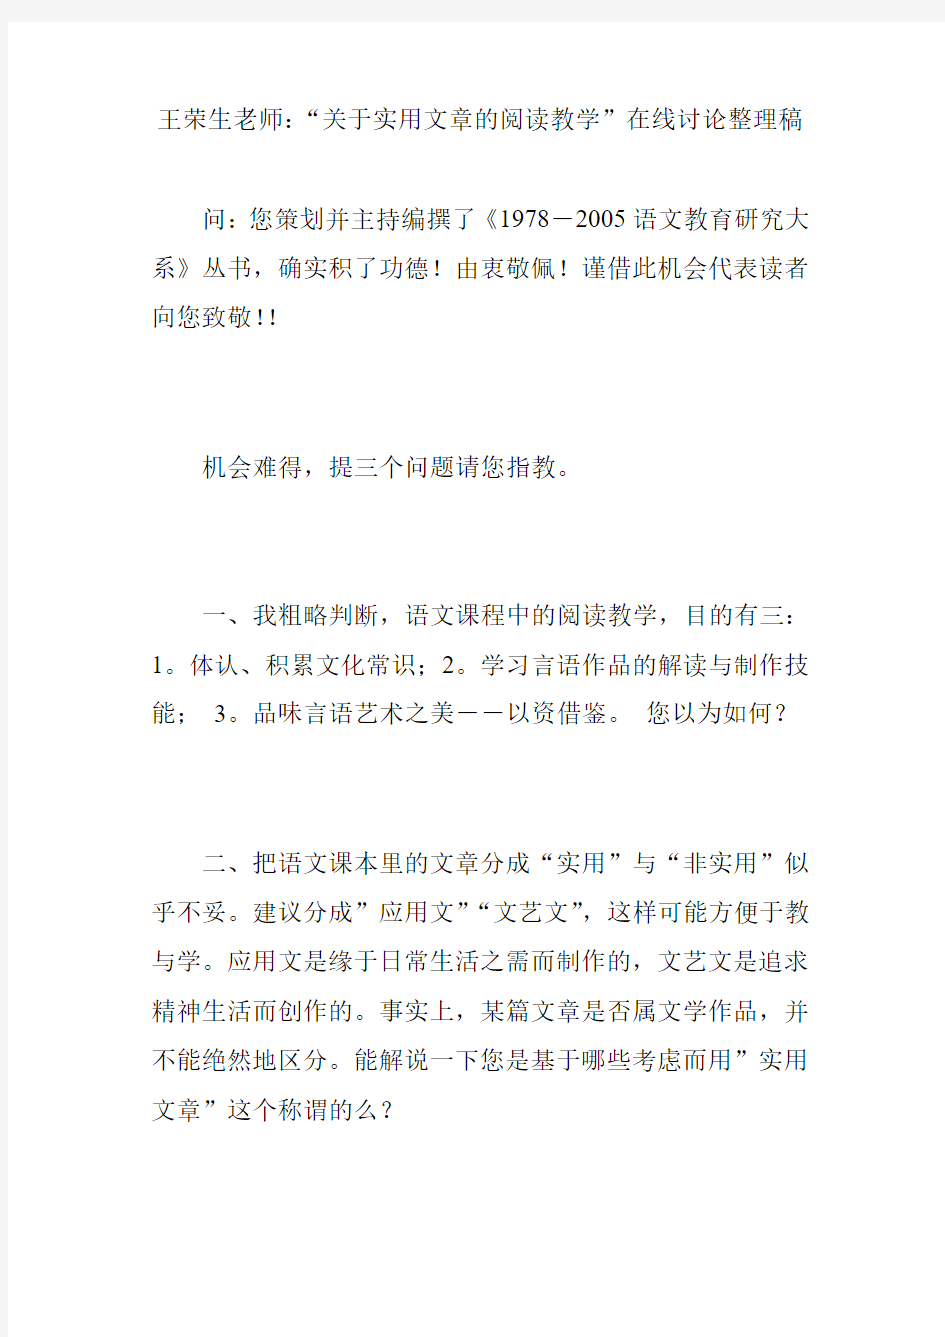 王荣生老师：“关于实用文章的阅读教学”在线讨论整理稿